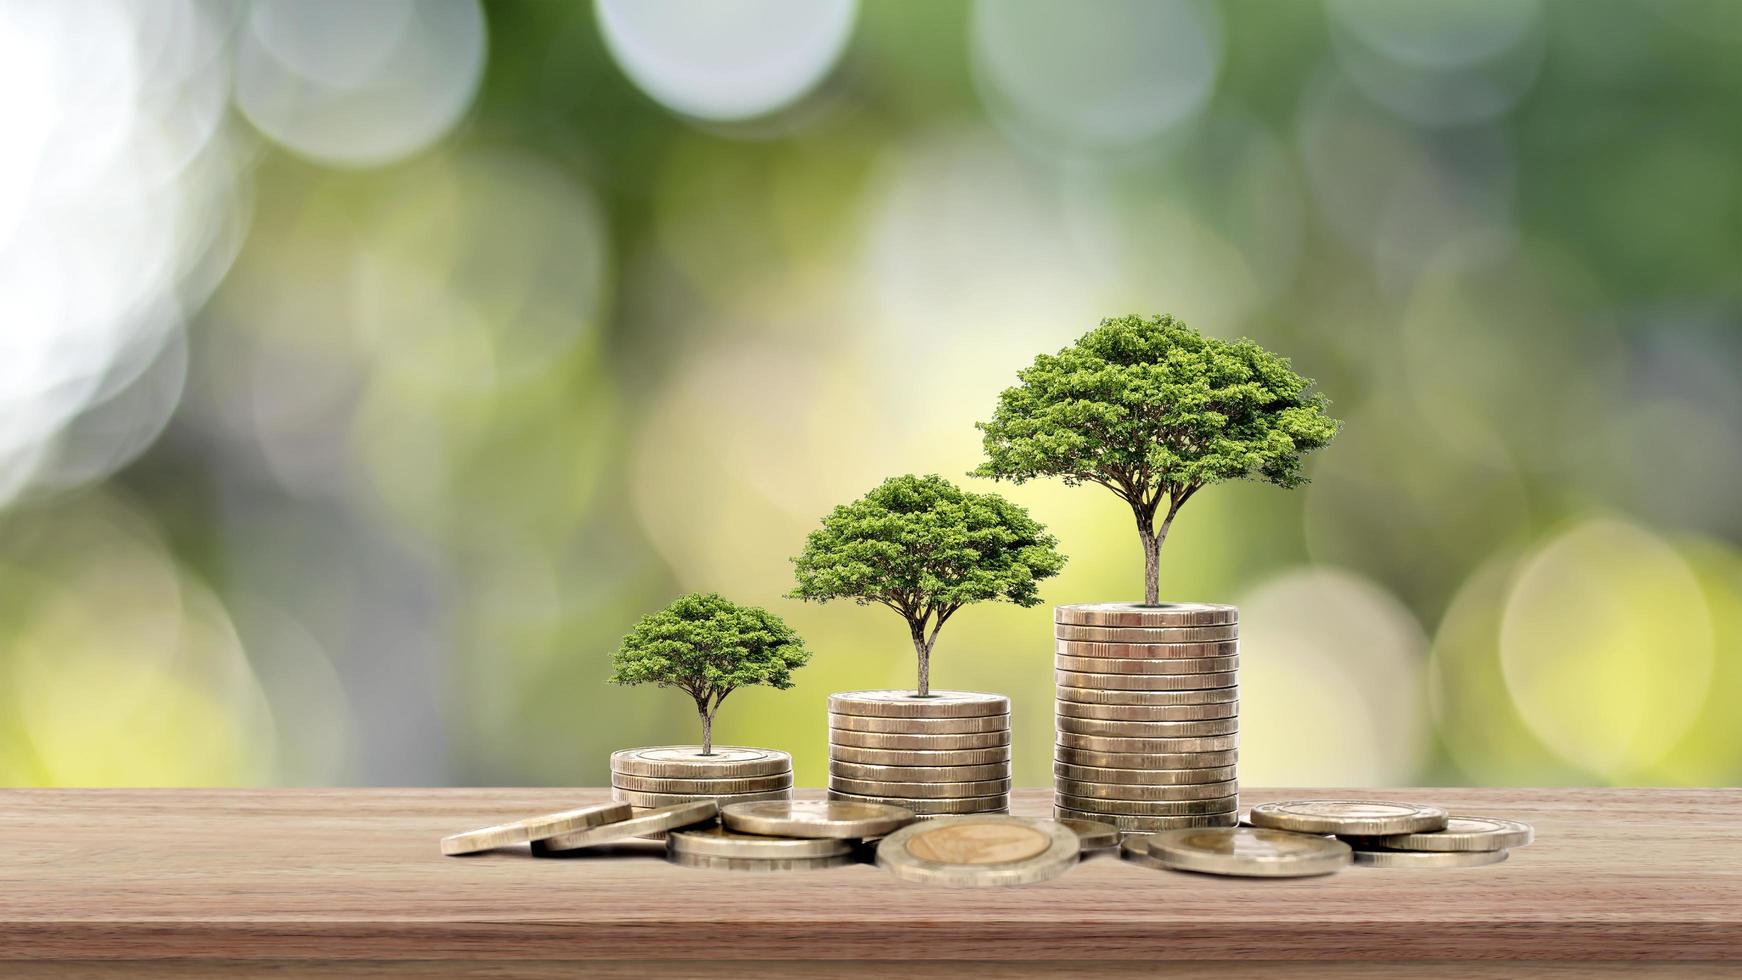 trädet växer på en stapel pengar på ett träbord och naturlig bakgrund, begreppet finansiella investeringar och ekonomisk expansion foto